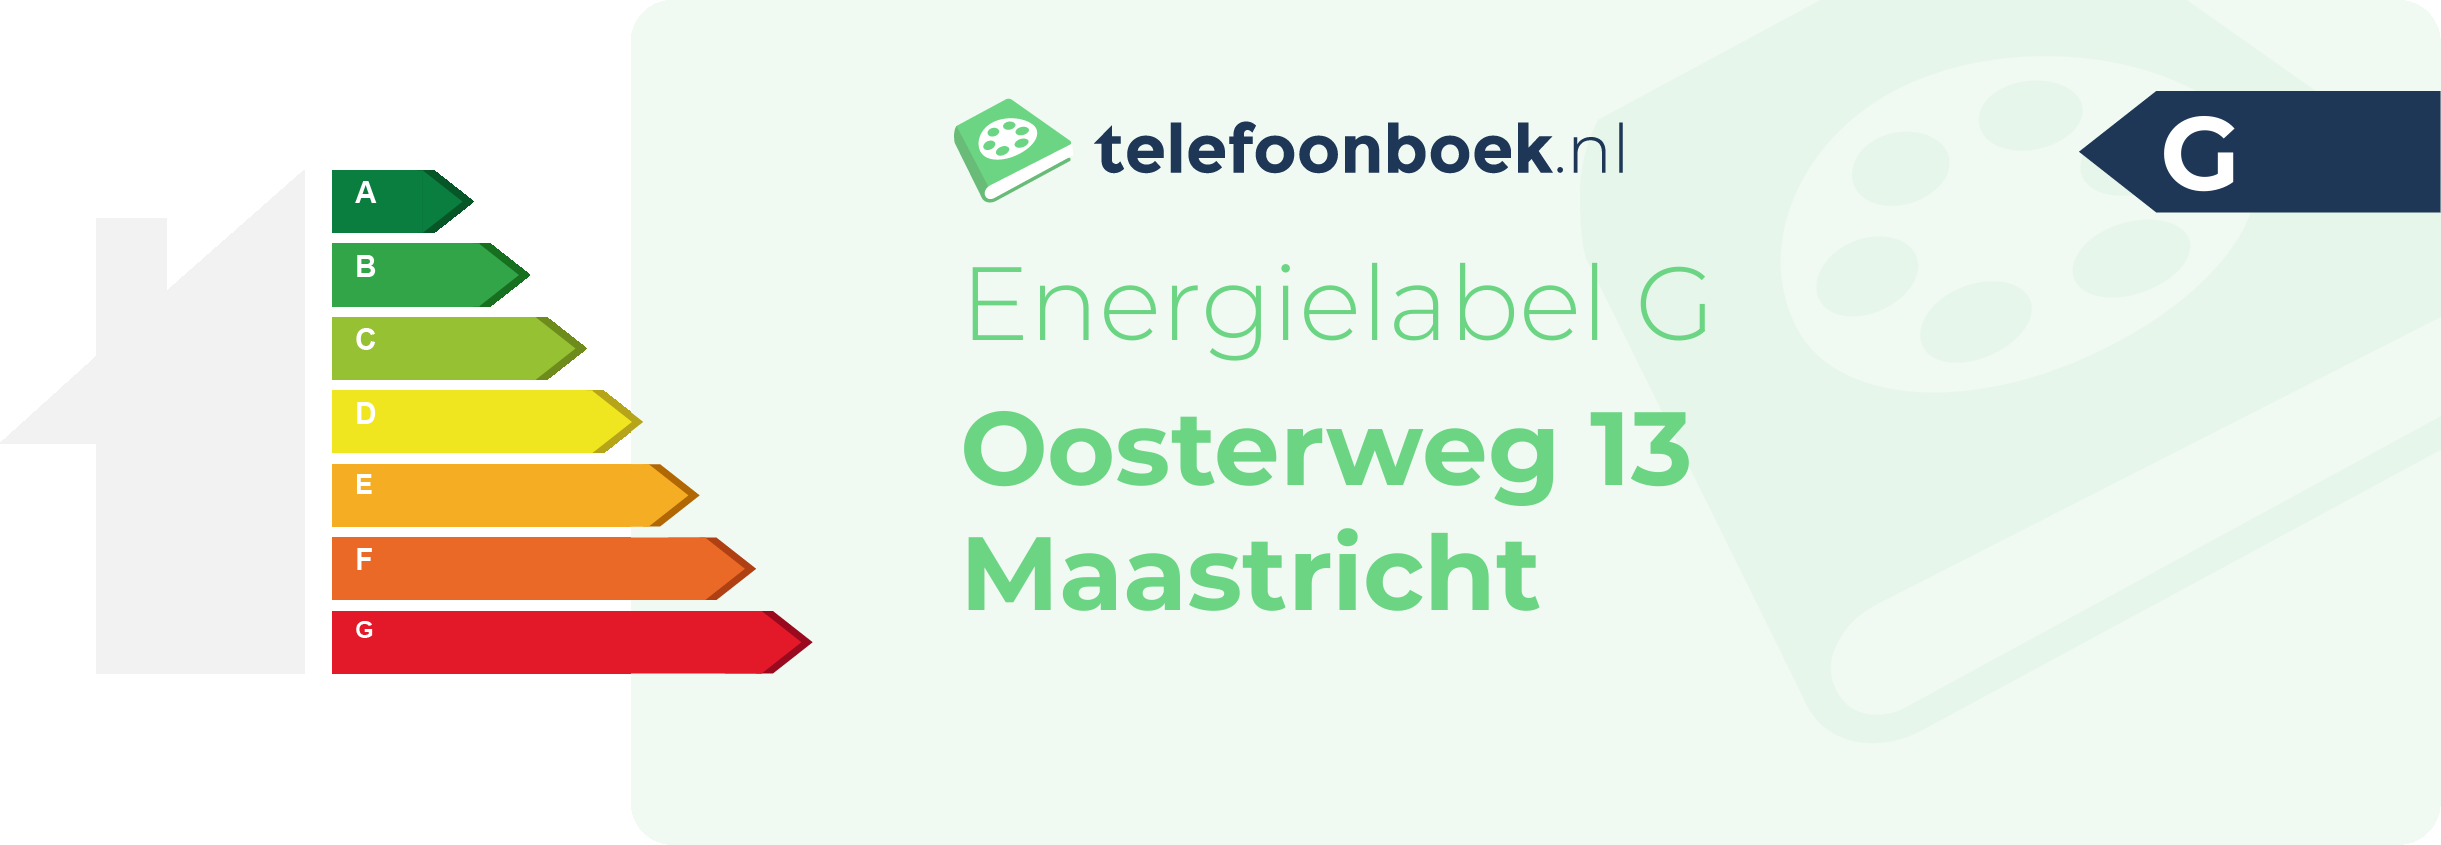 Energielabel Oosterweg 13 Maastricht